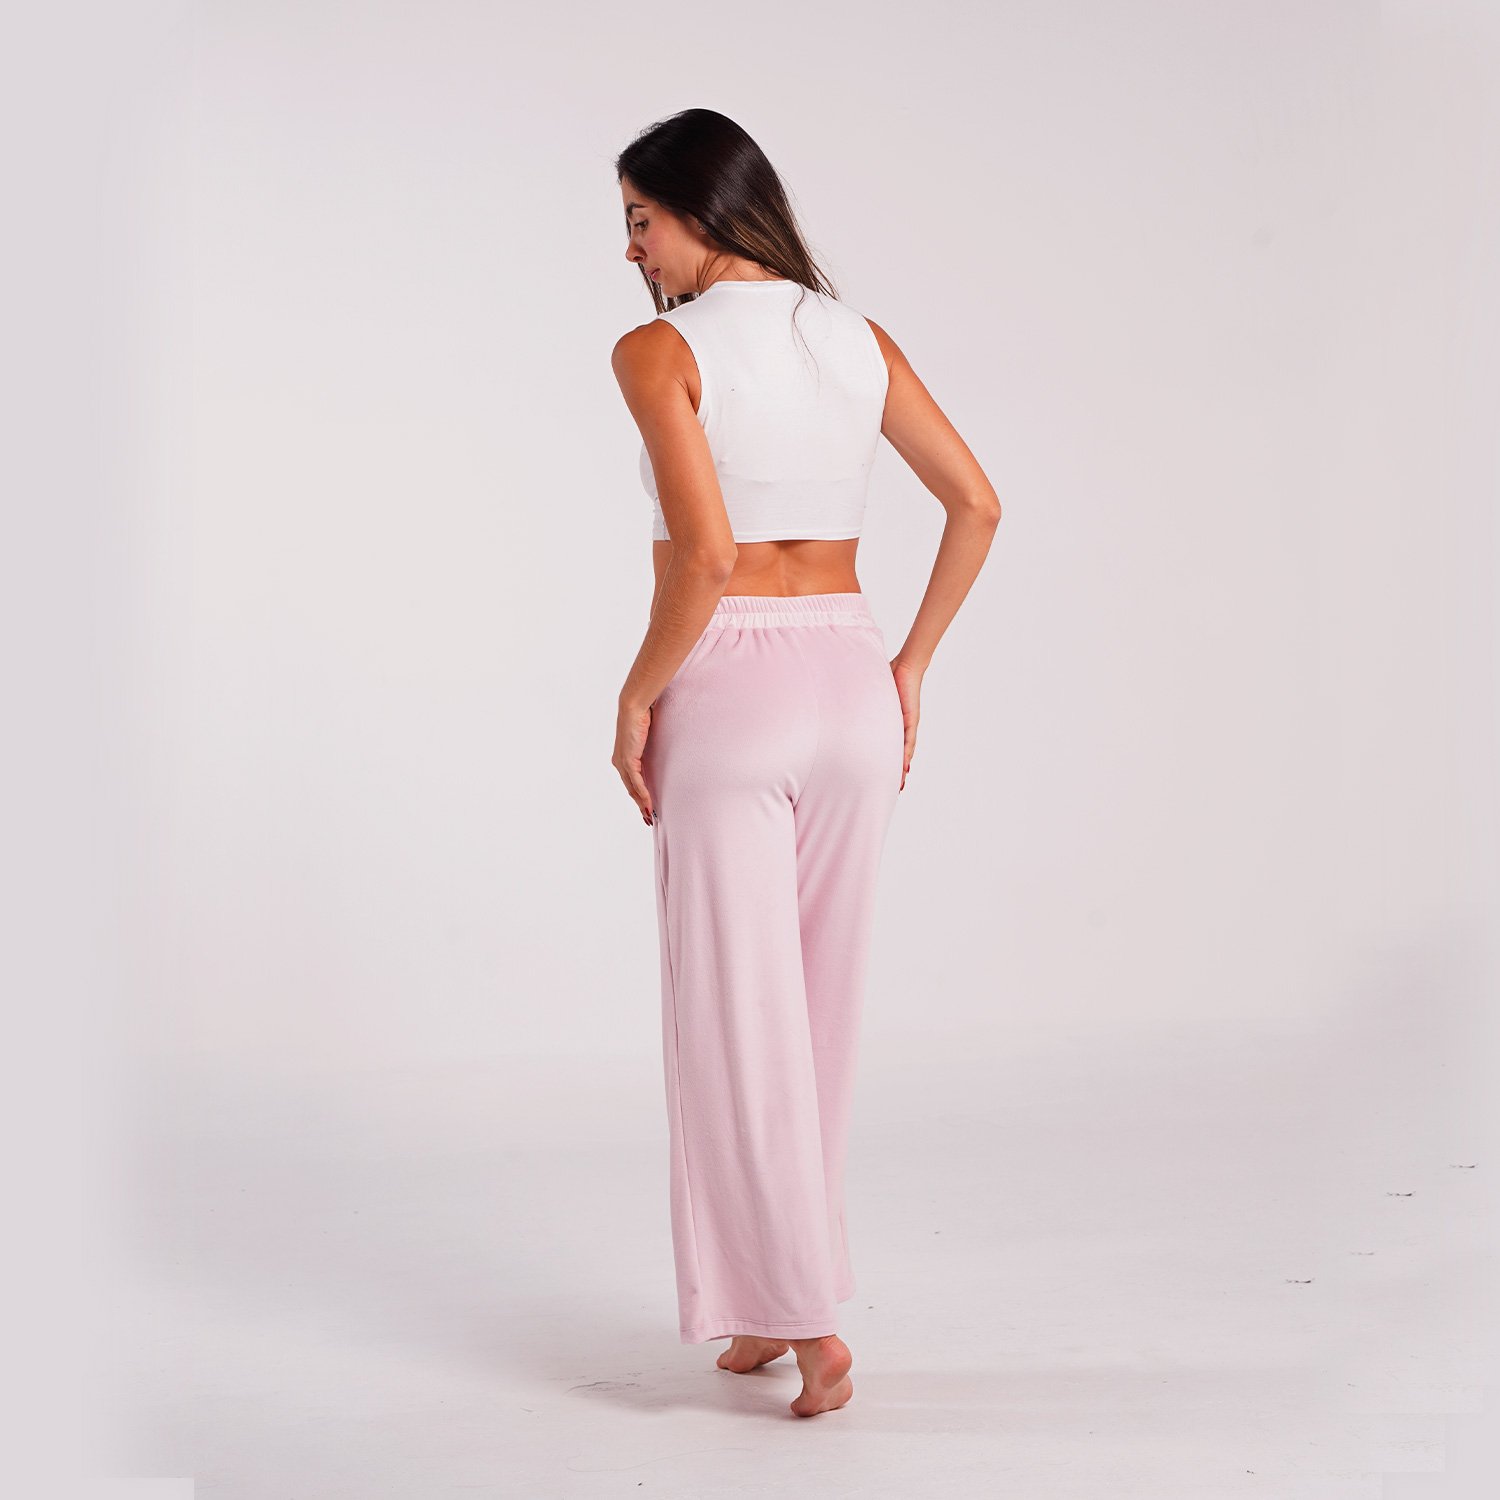 pantalon rosadode tela ancho outfit｜TikTok Search